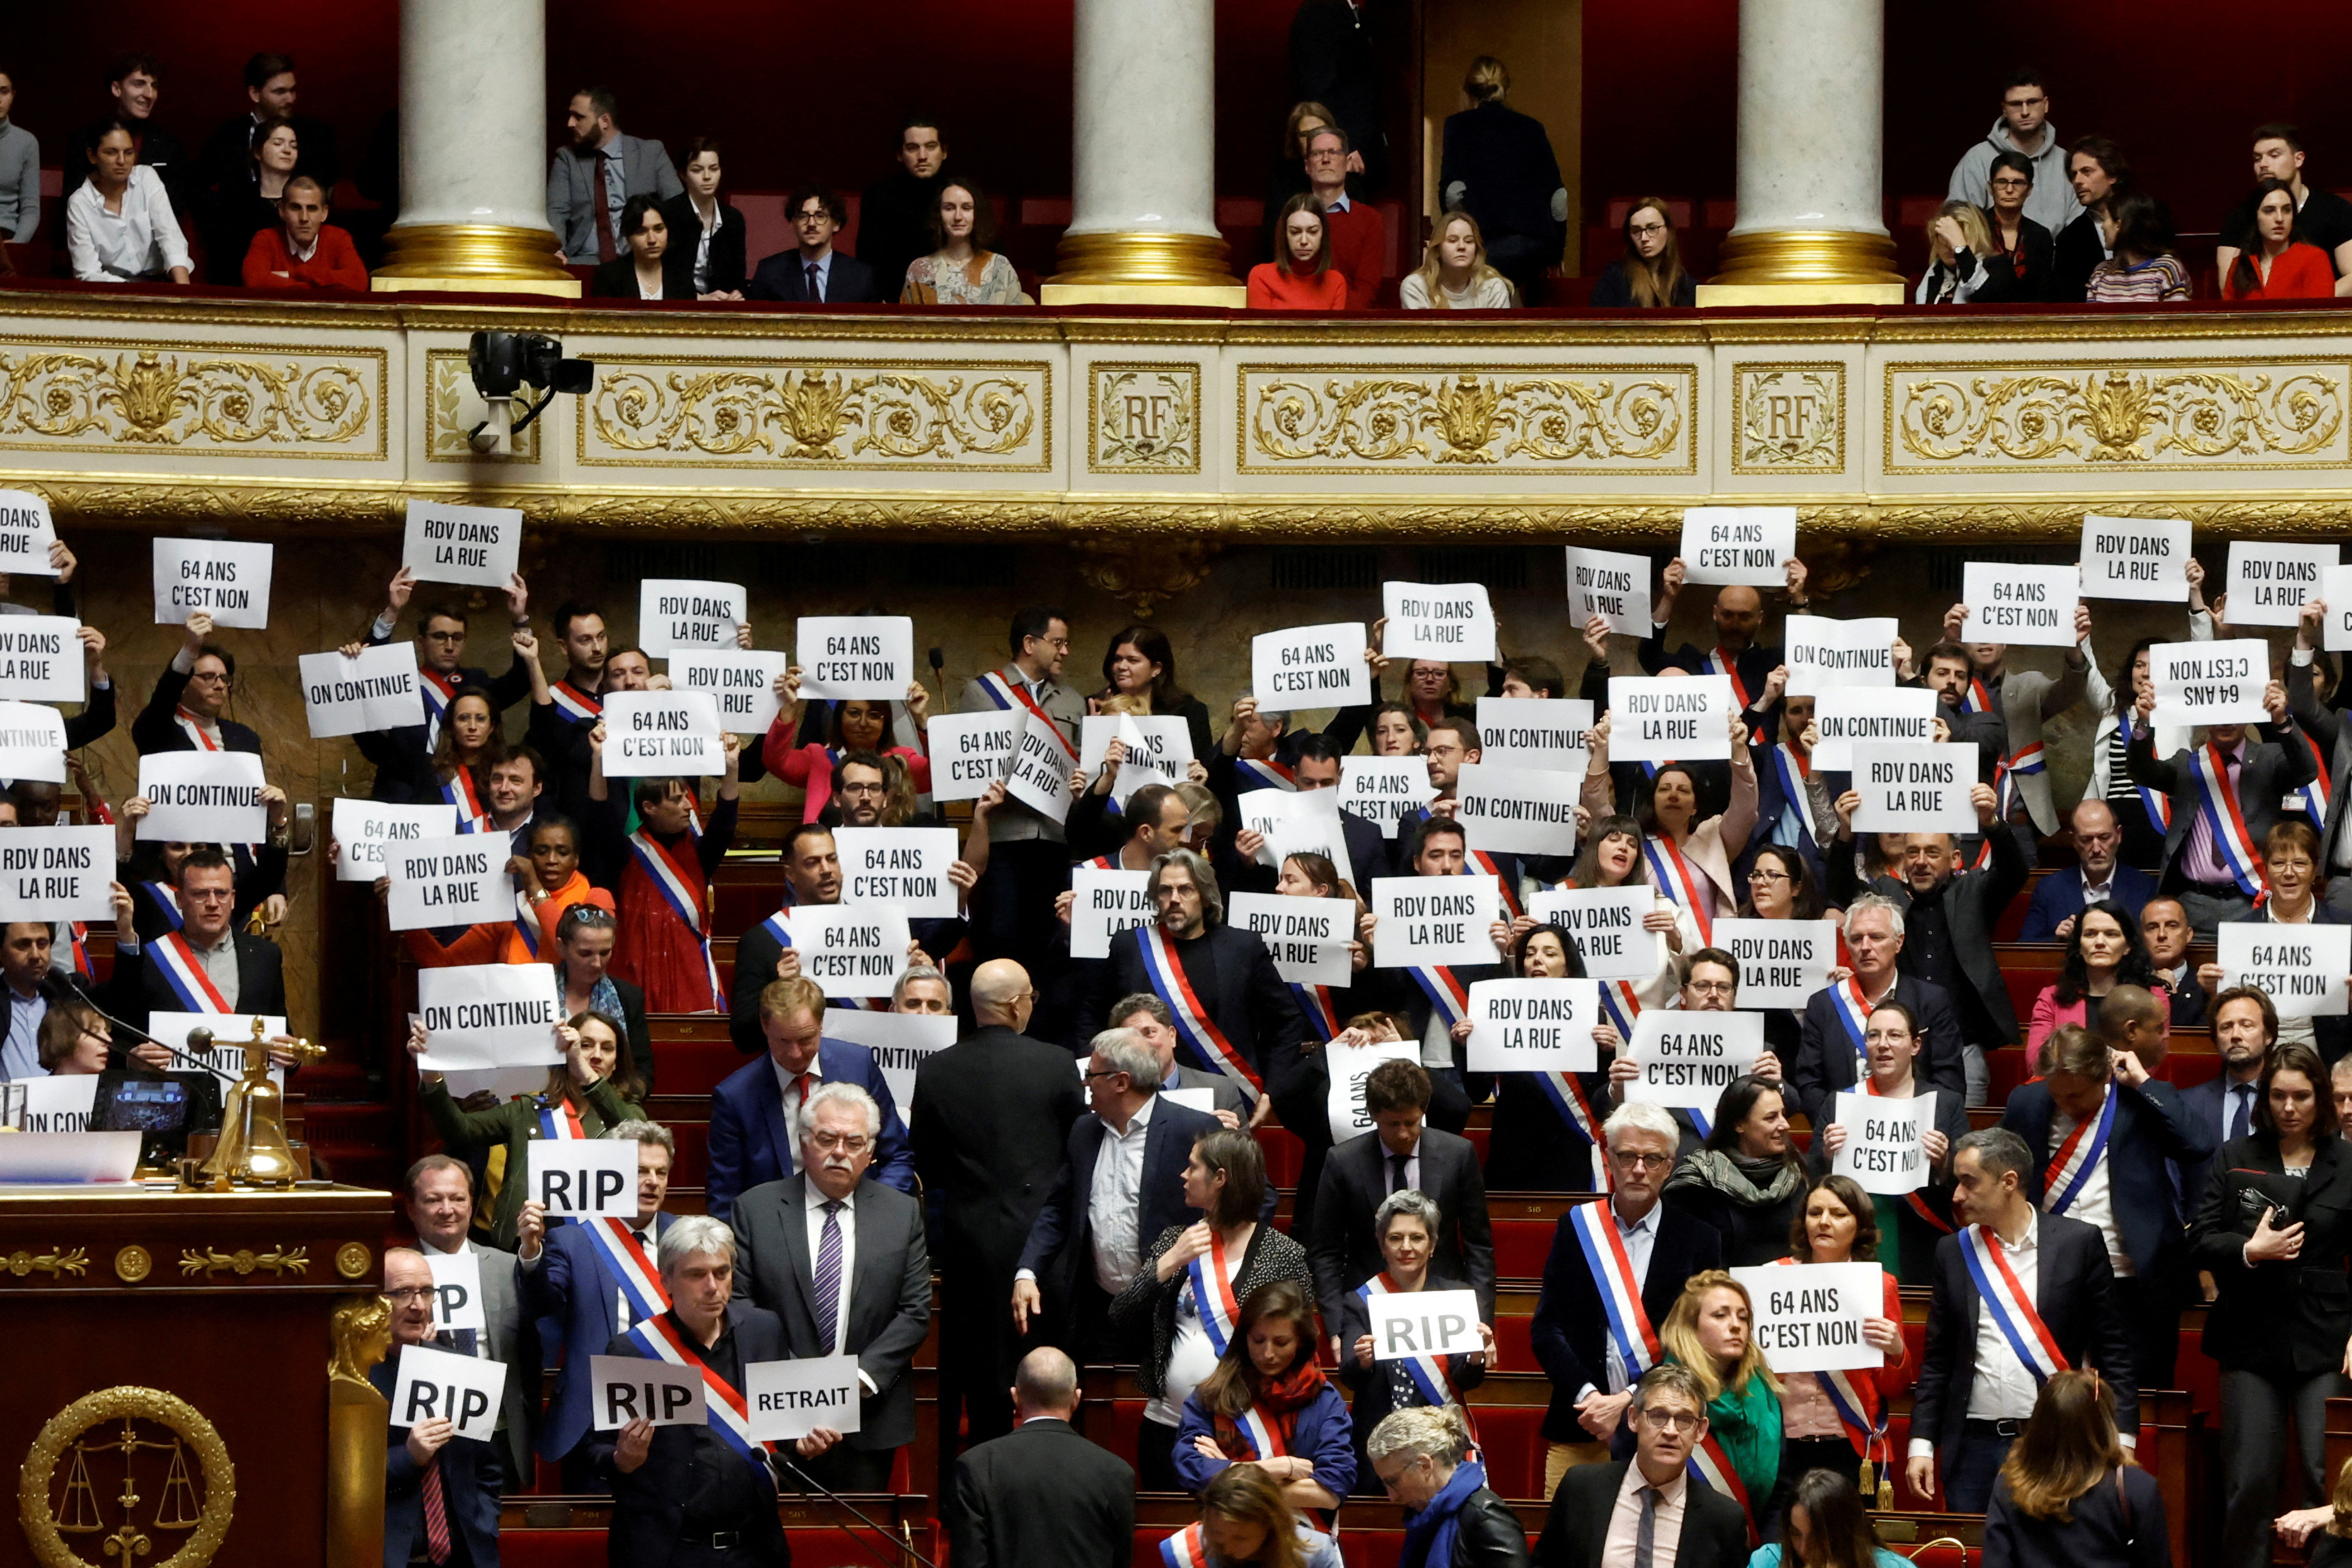 Miembros del parlamento de la izquierda sostienen pancartas tras el resultado negativo de la votación de la primera moción de censura contra el gobierno francés, presentada por el grupo centrista Liot (REUTERS/Gonzalo Fuentes)